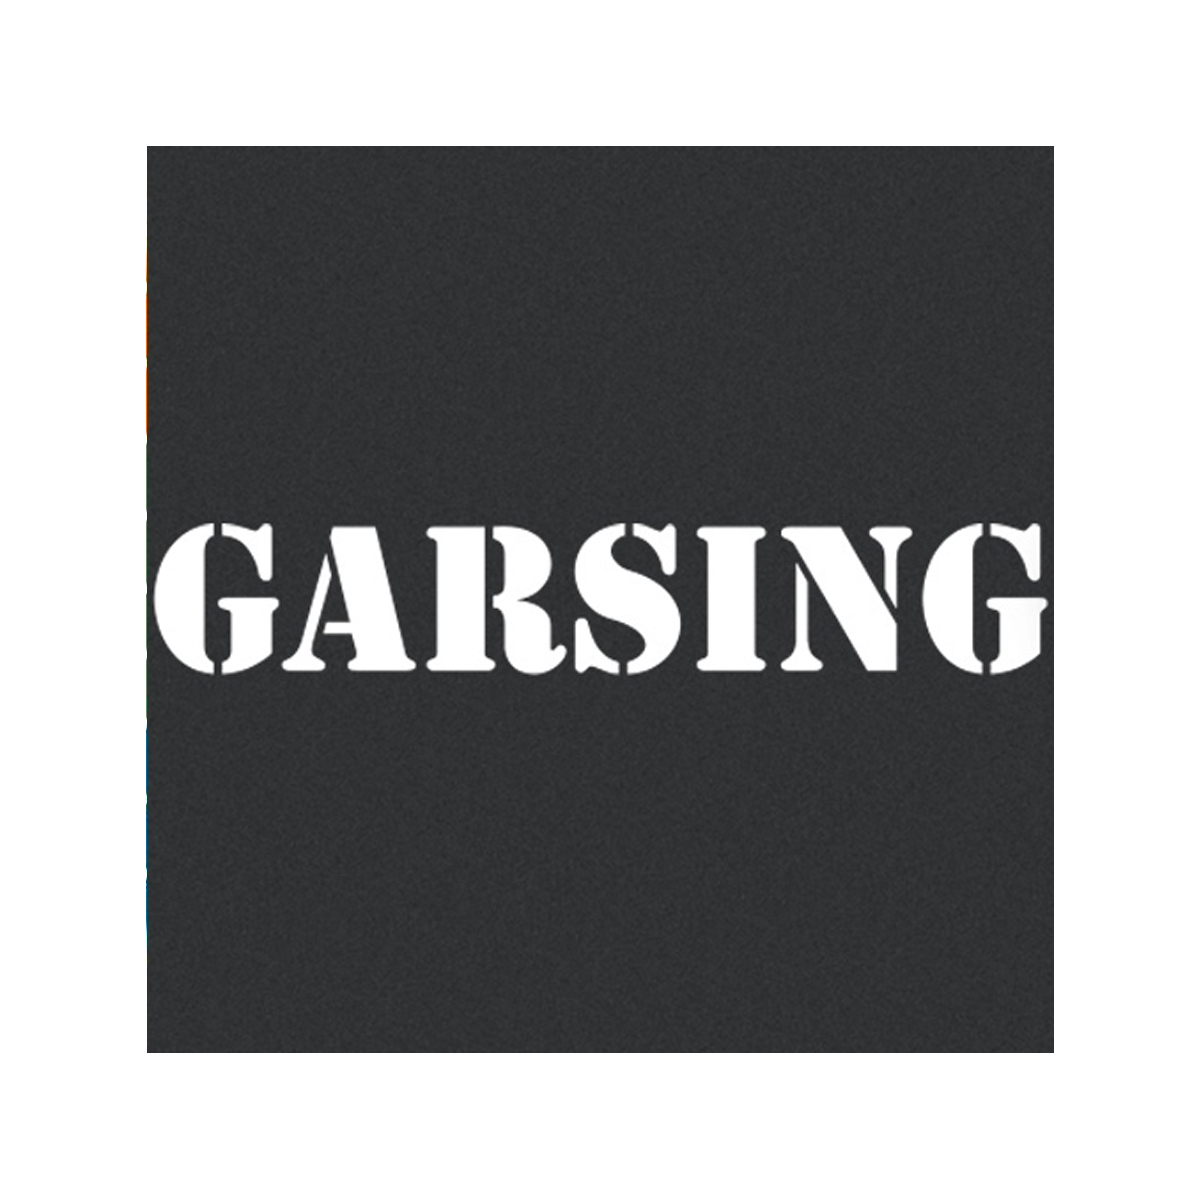 806-garsing-1200x1200.png